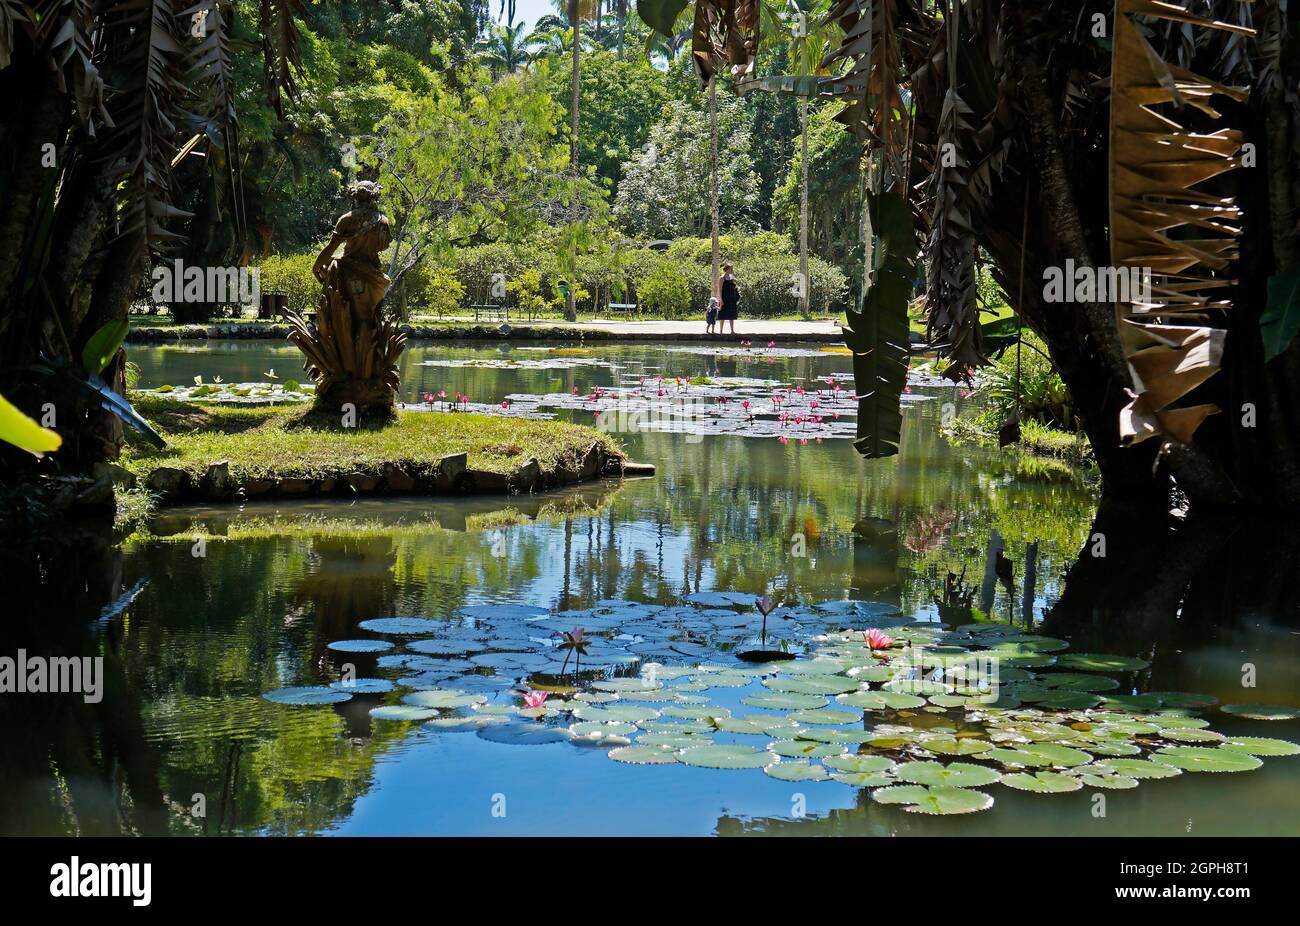 RIO DE JANEIRO, BRÉSIL - 8 FÉVRIER 2020 : vue partielle sur le lac dans le jardin botanique de Rio de Janeiro Banque D'Images